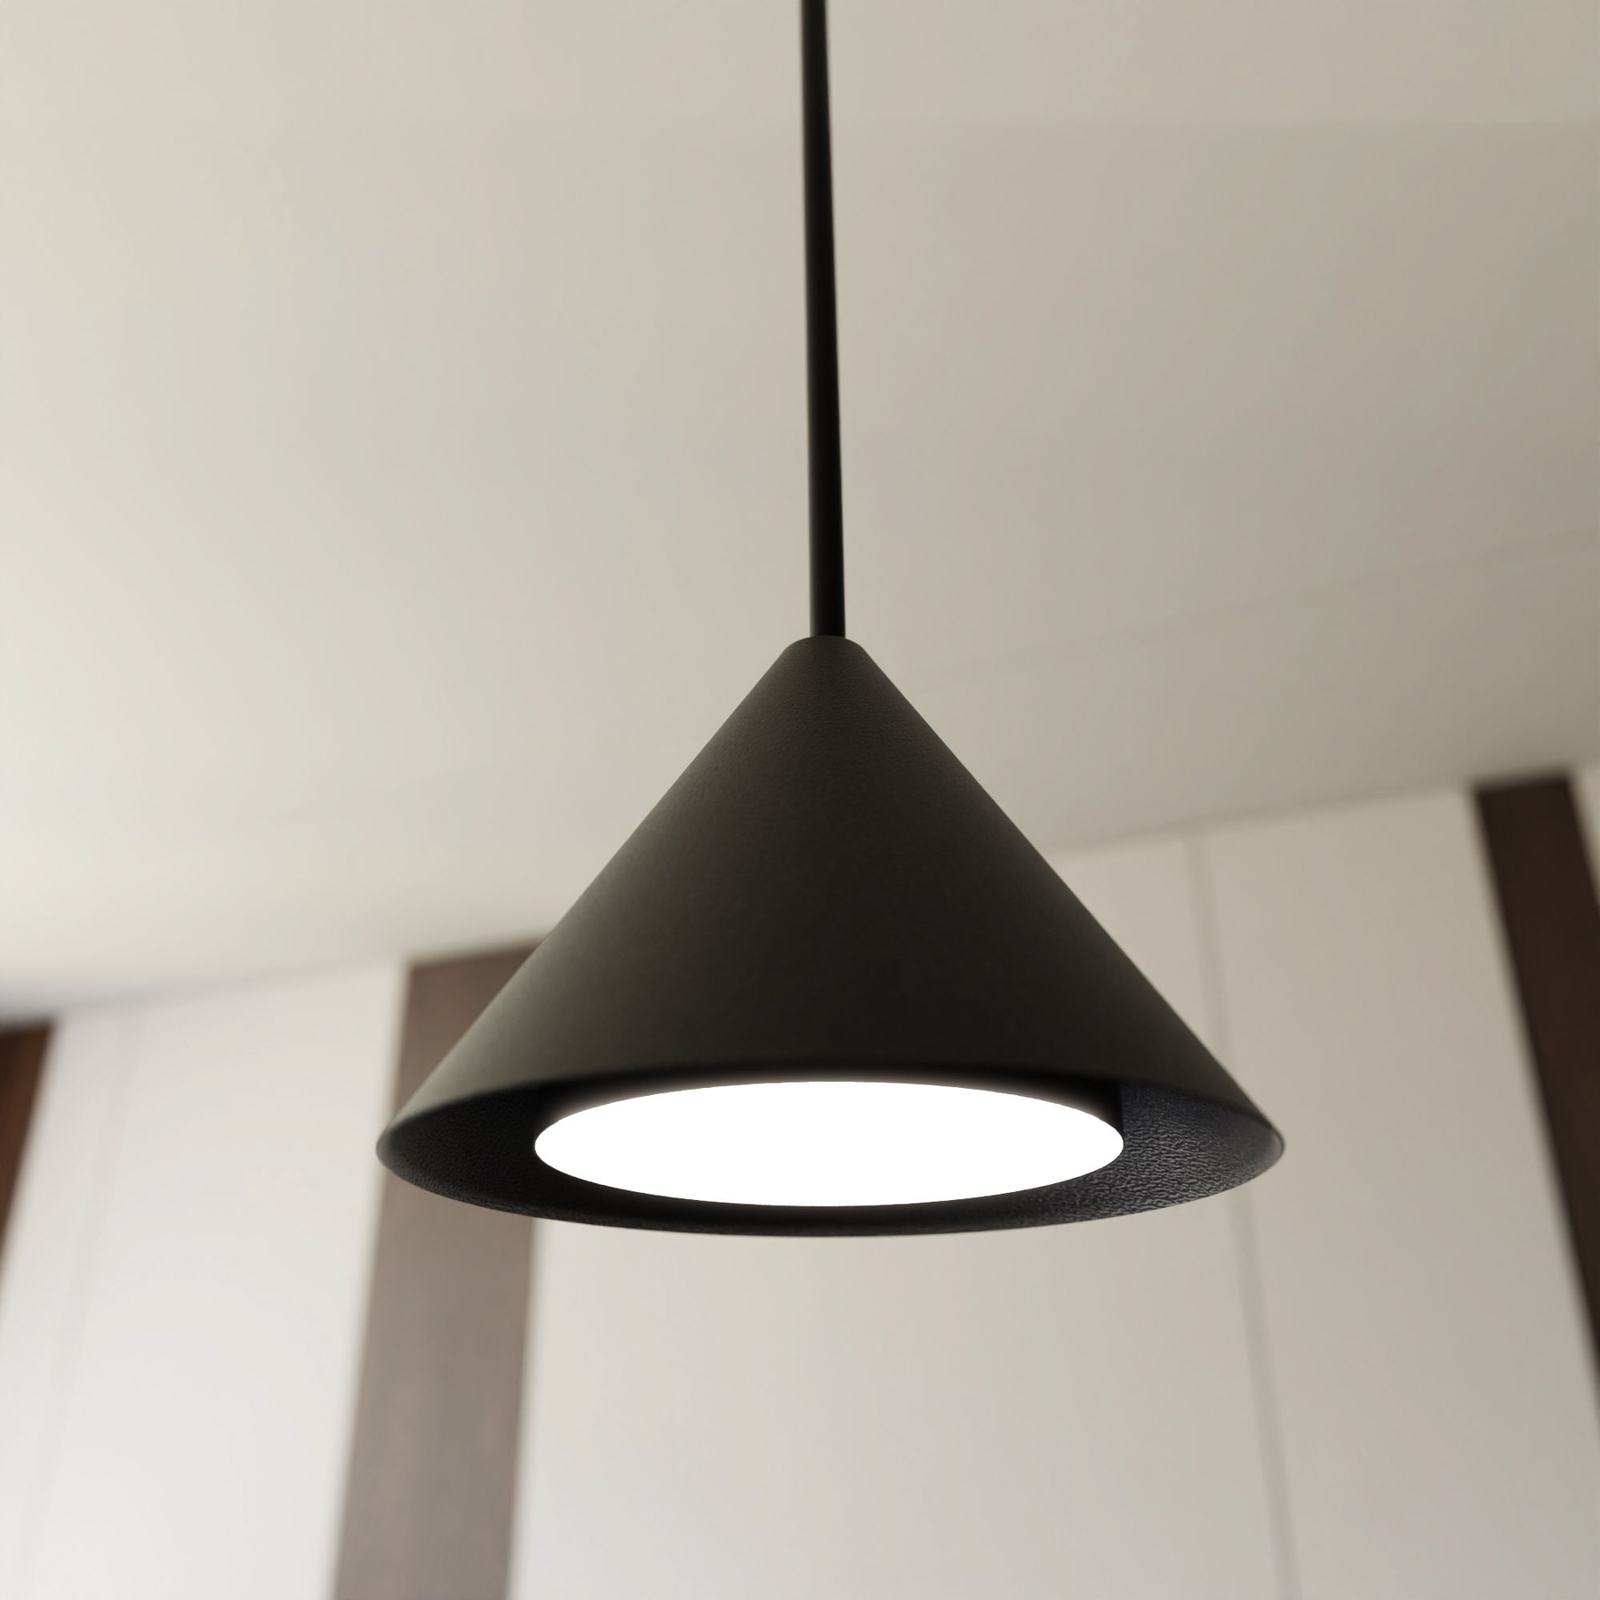 Elit pendant light, 1-bulb, black, metal